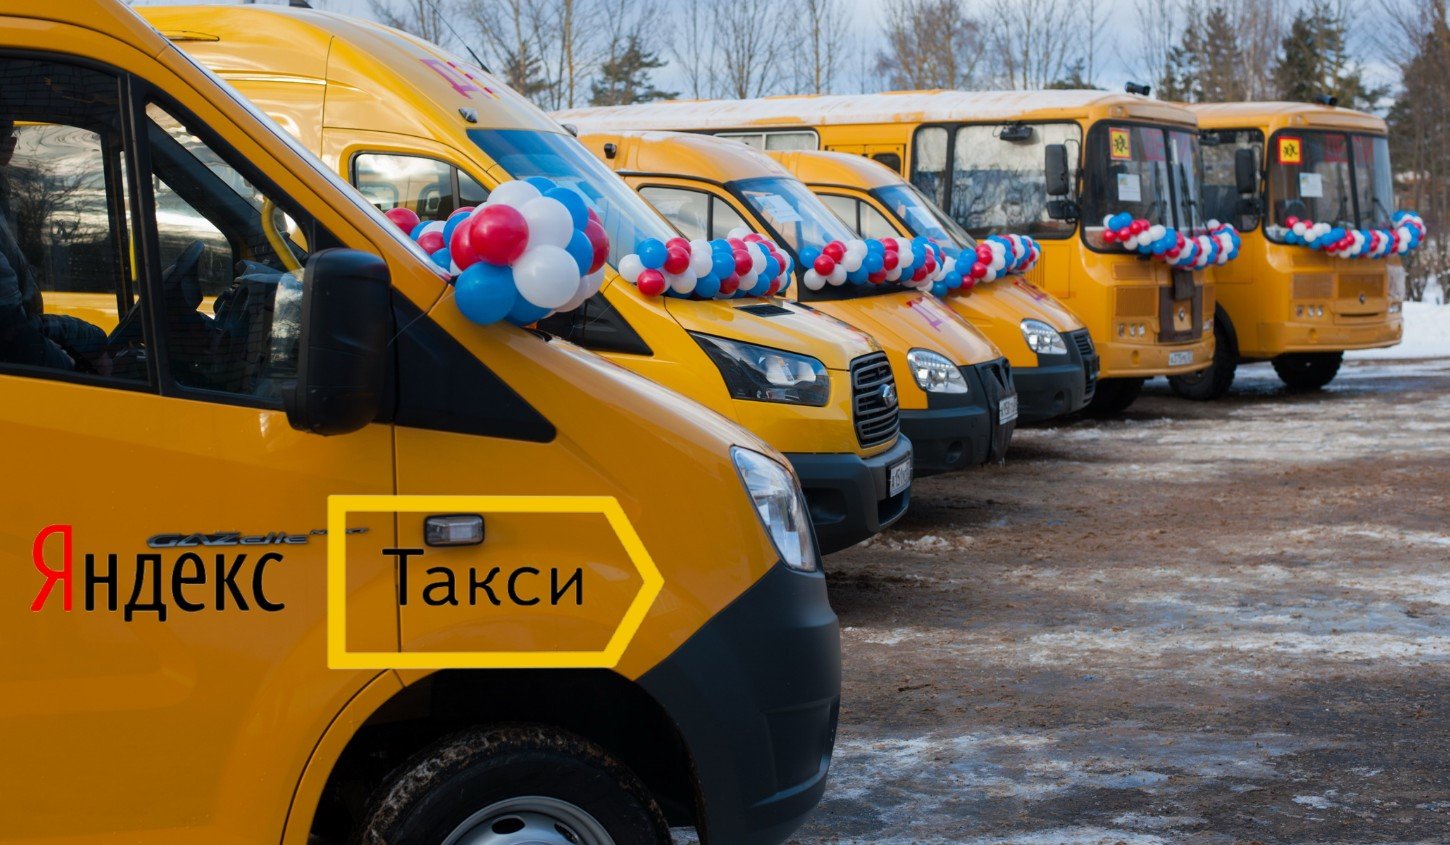 Поездка в маршрутном такси. Школьные автобусы в России. Общественный транспорт такси.